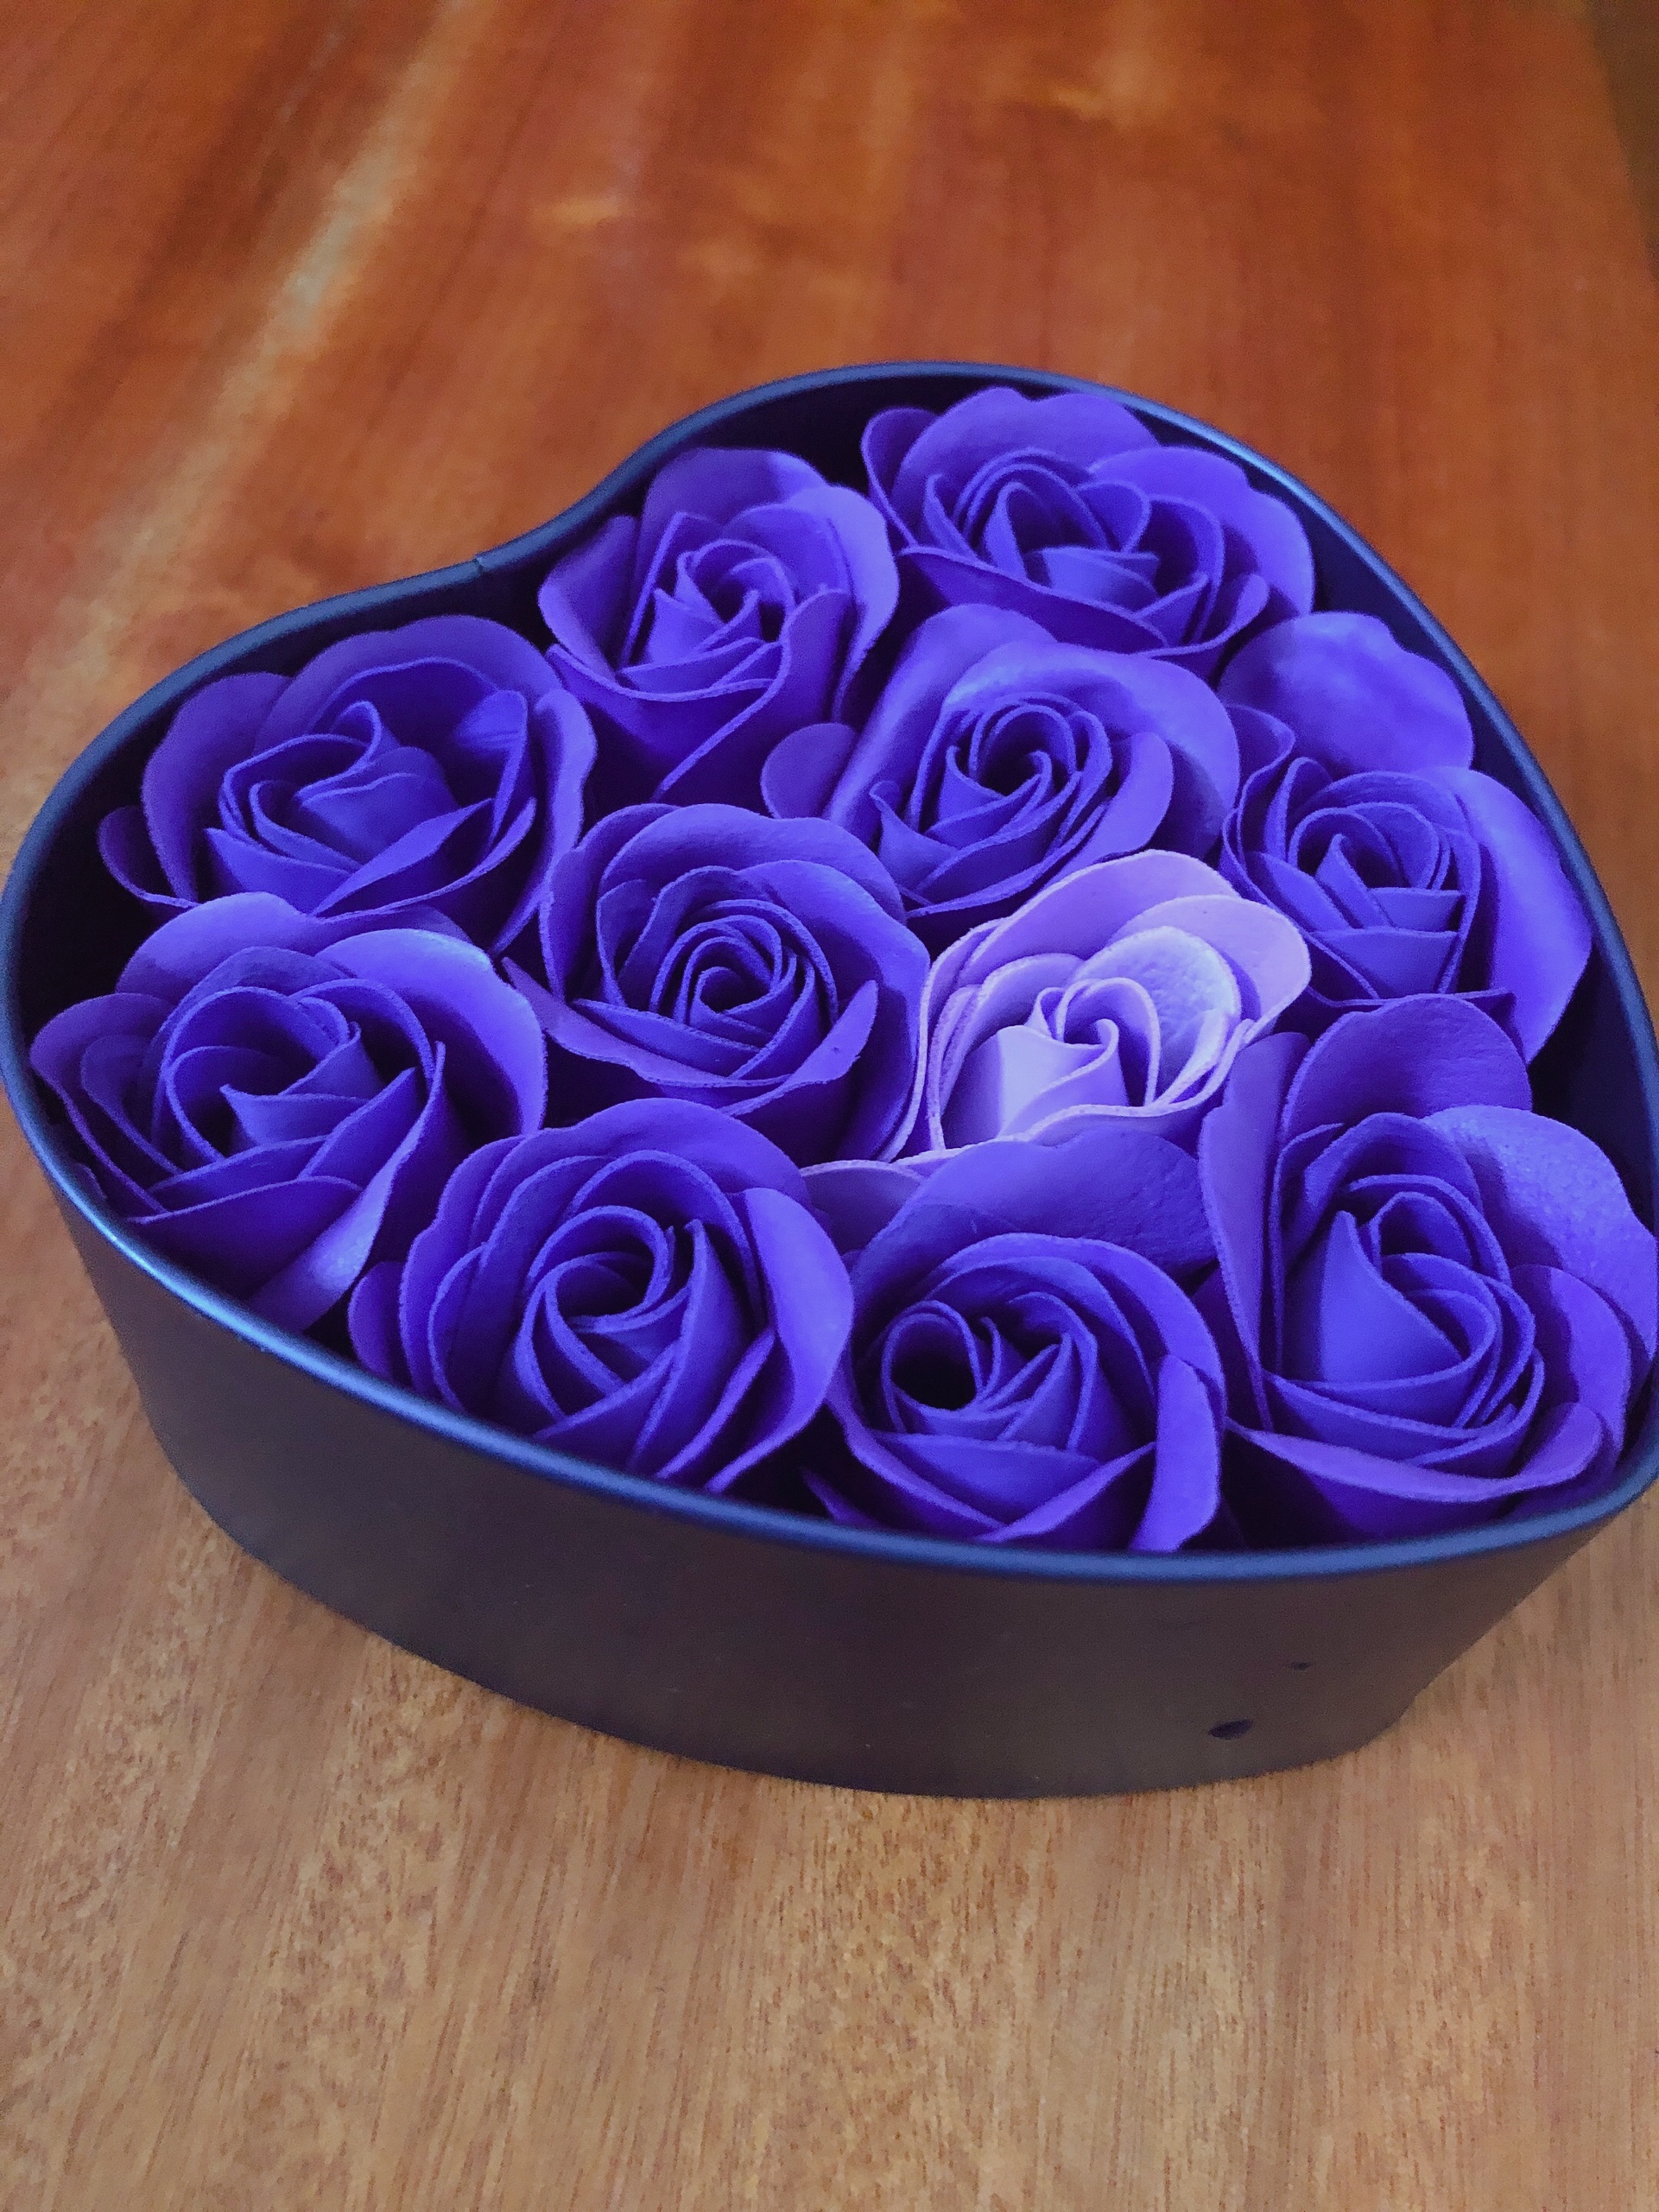 Hoa hồng trái tim hộp thiếc đựng 11 bông thích hợp tặng quà cho người yêu, bạn gái nhân các ngày lễ - Giao màu ngẫu nhiên